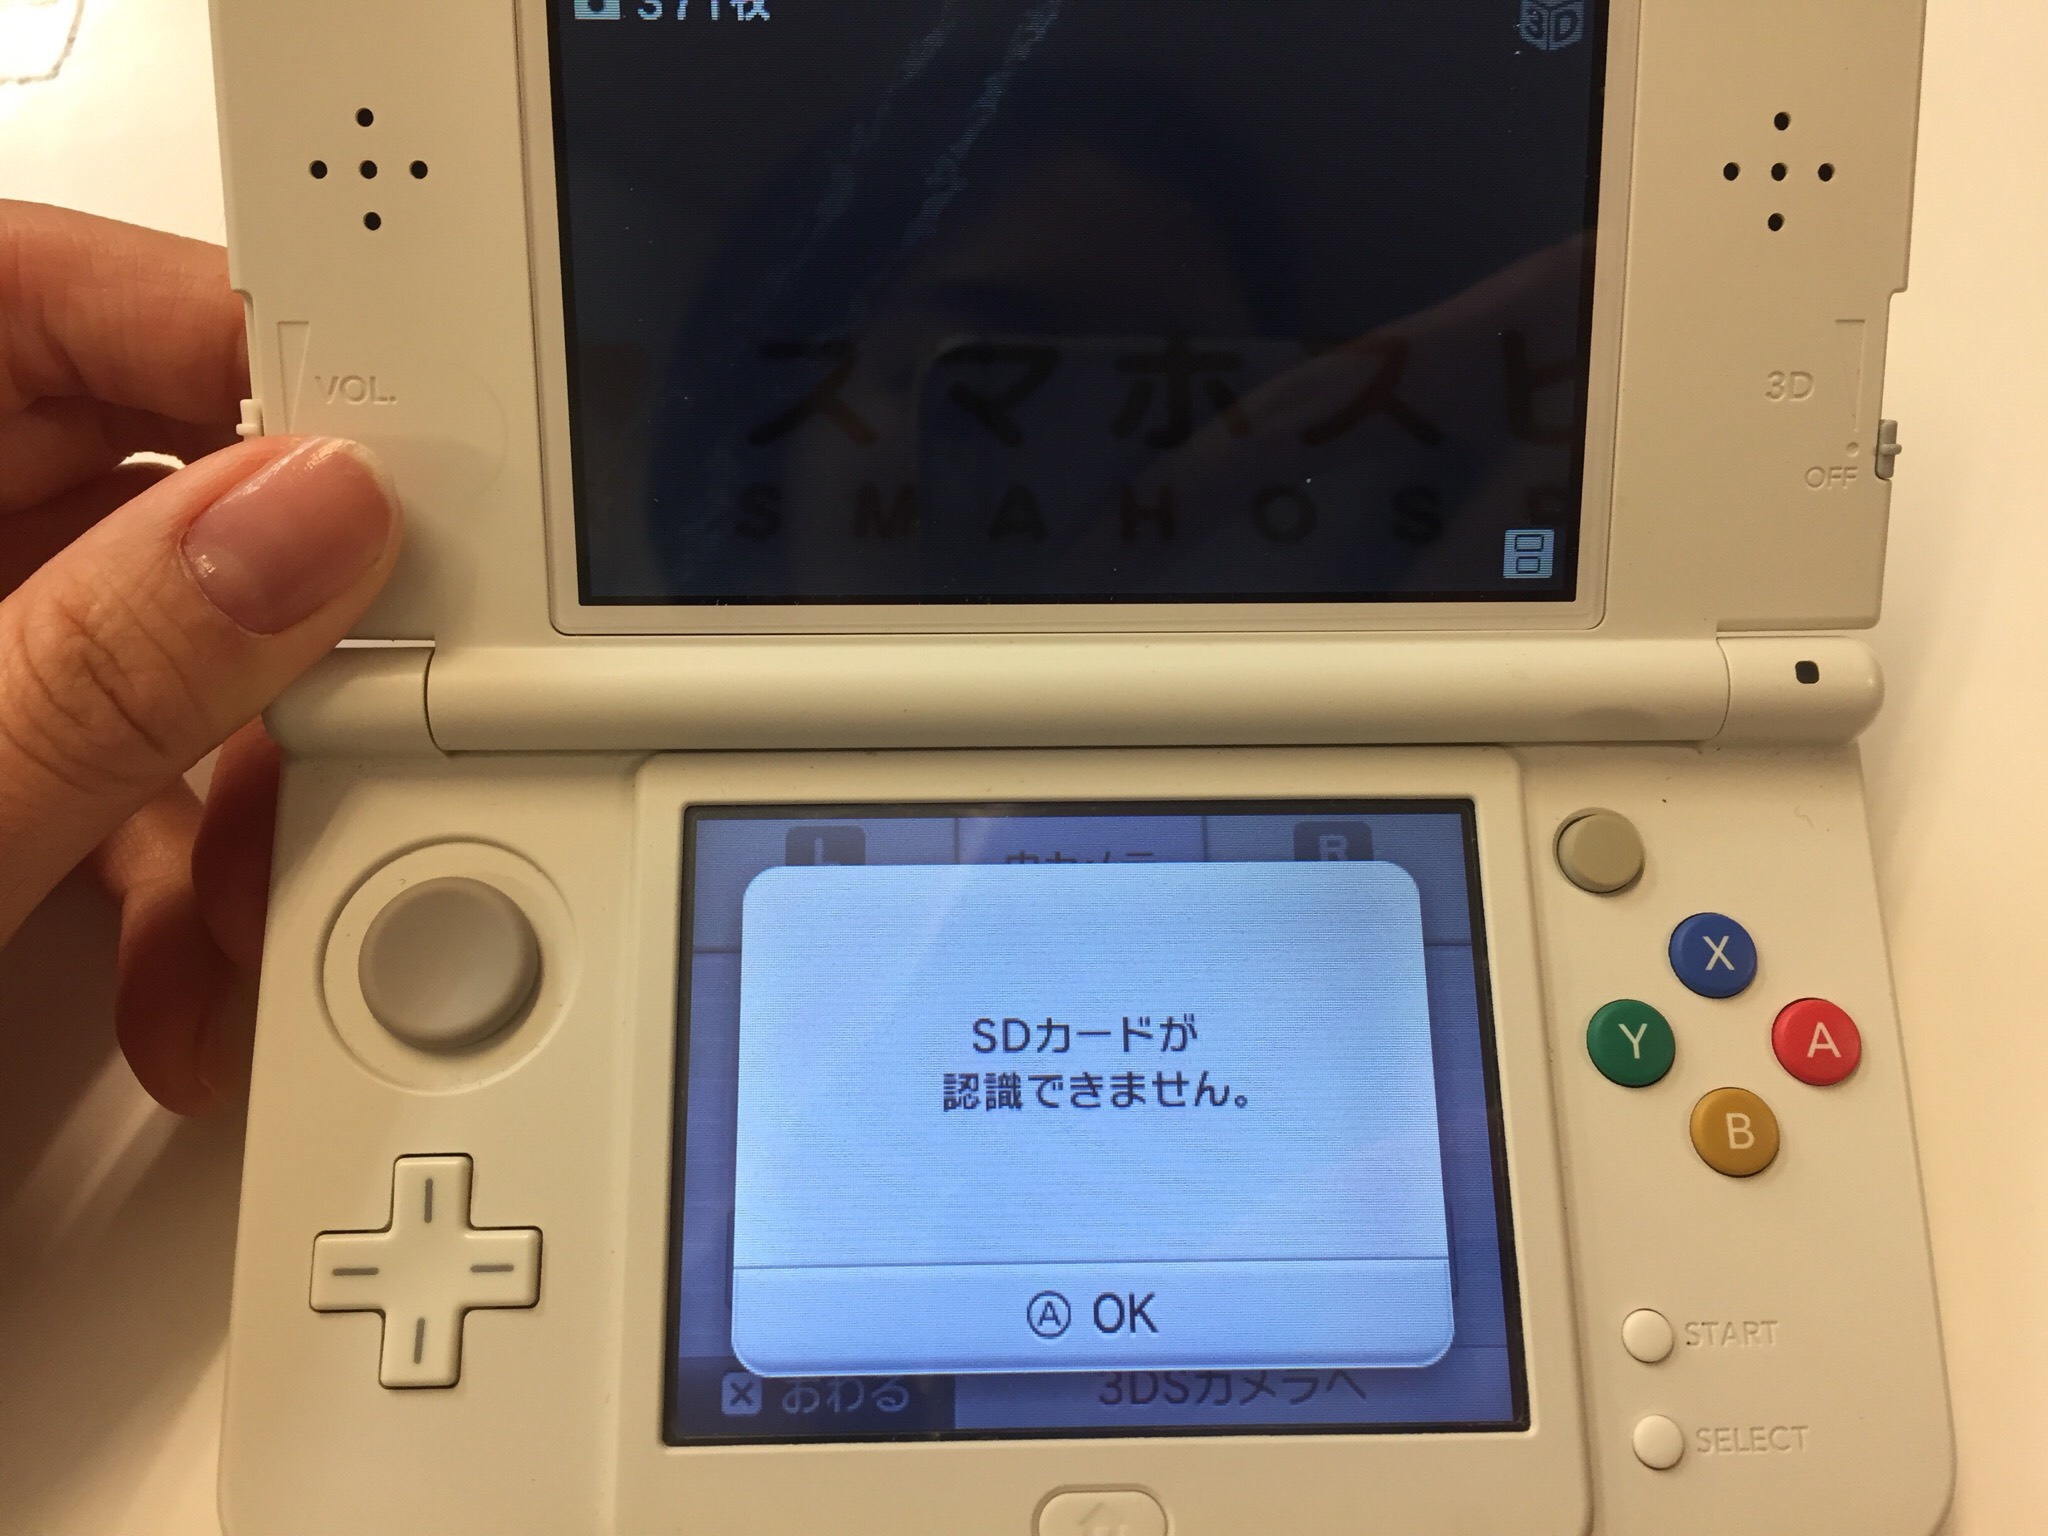 任天堂 New3ds Microsdカードが認識しない端末 Microsdが破損 カードスロットが破損 Nintendo3ds Switch Psp 修理のゲームホスピタル Nintendo3ds ニンテンドーds Psp 修理